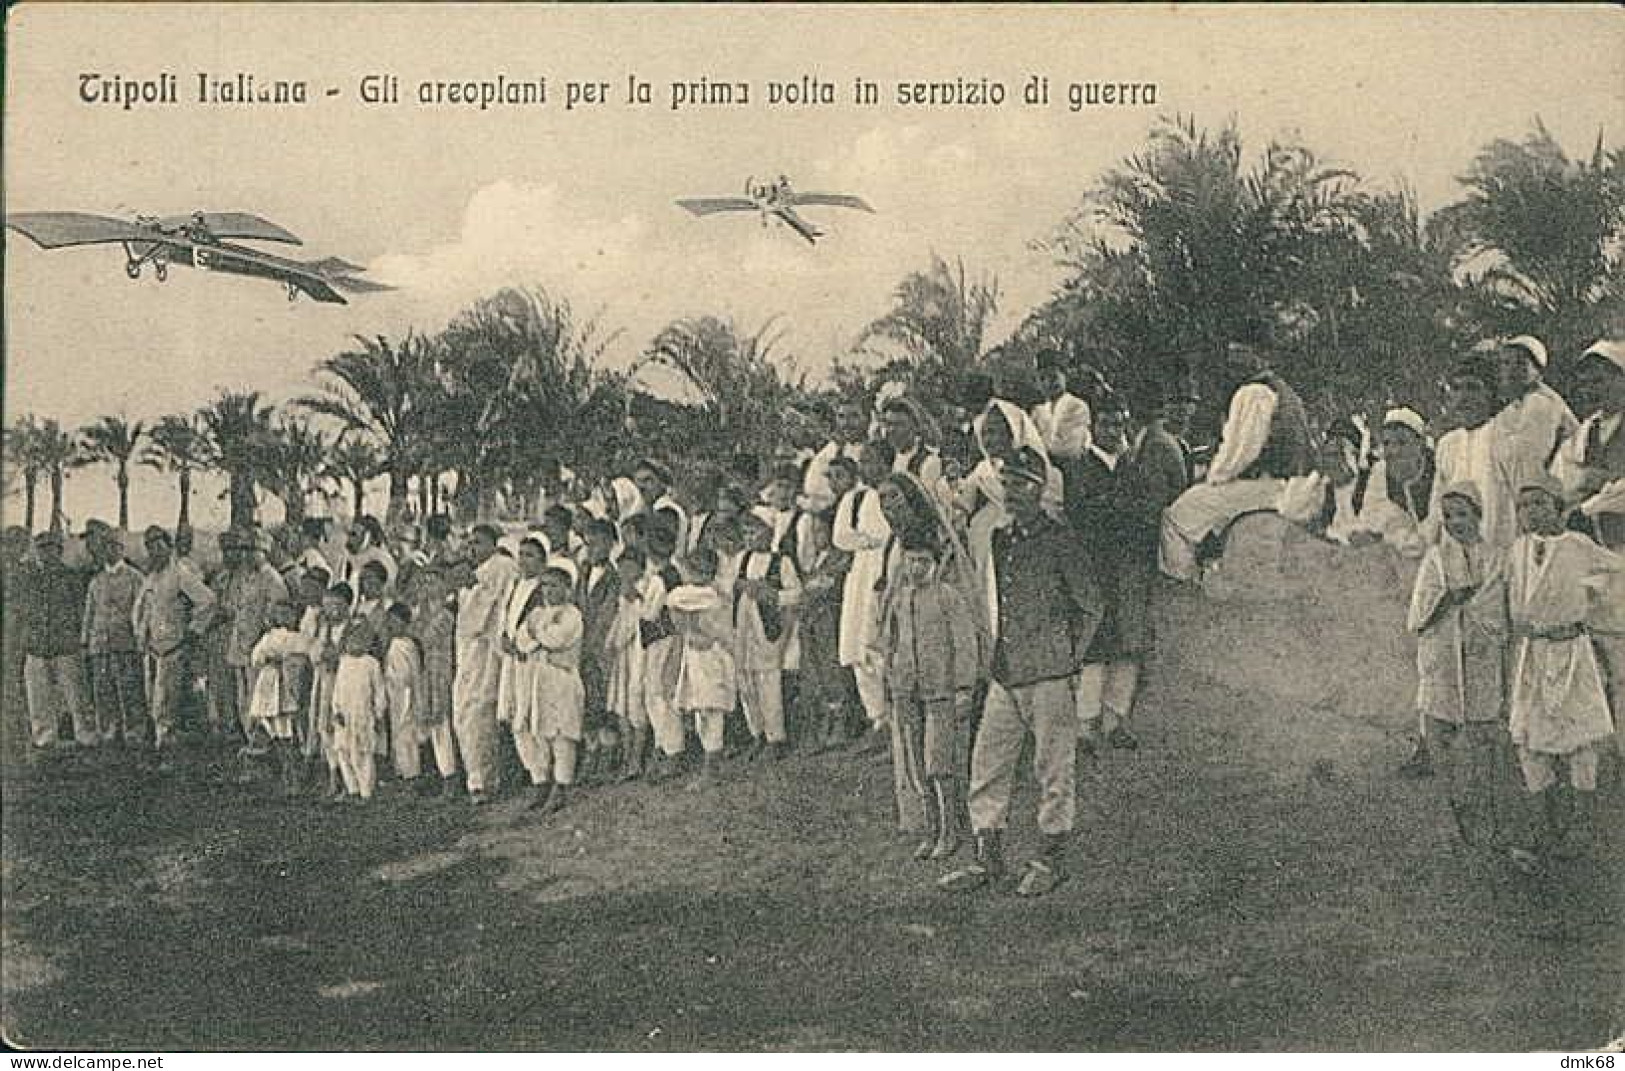 LIBIA / LIBYA - TRIPOLI ITALIANA - GLI AEROPLANI PER LA PRIMA VOLTA IN SEVIZIO DI GUERRA - ED. ALTEROCCA 1910s (12455) - Libyen